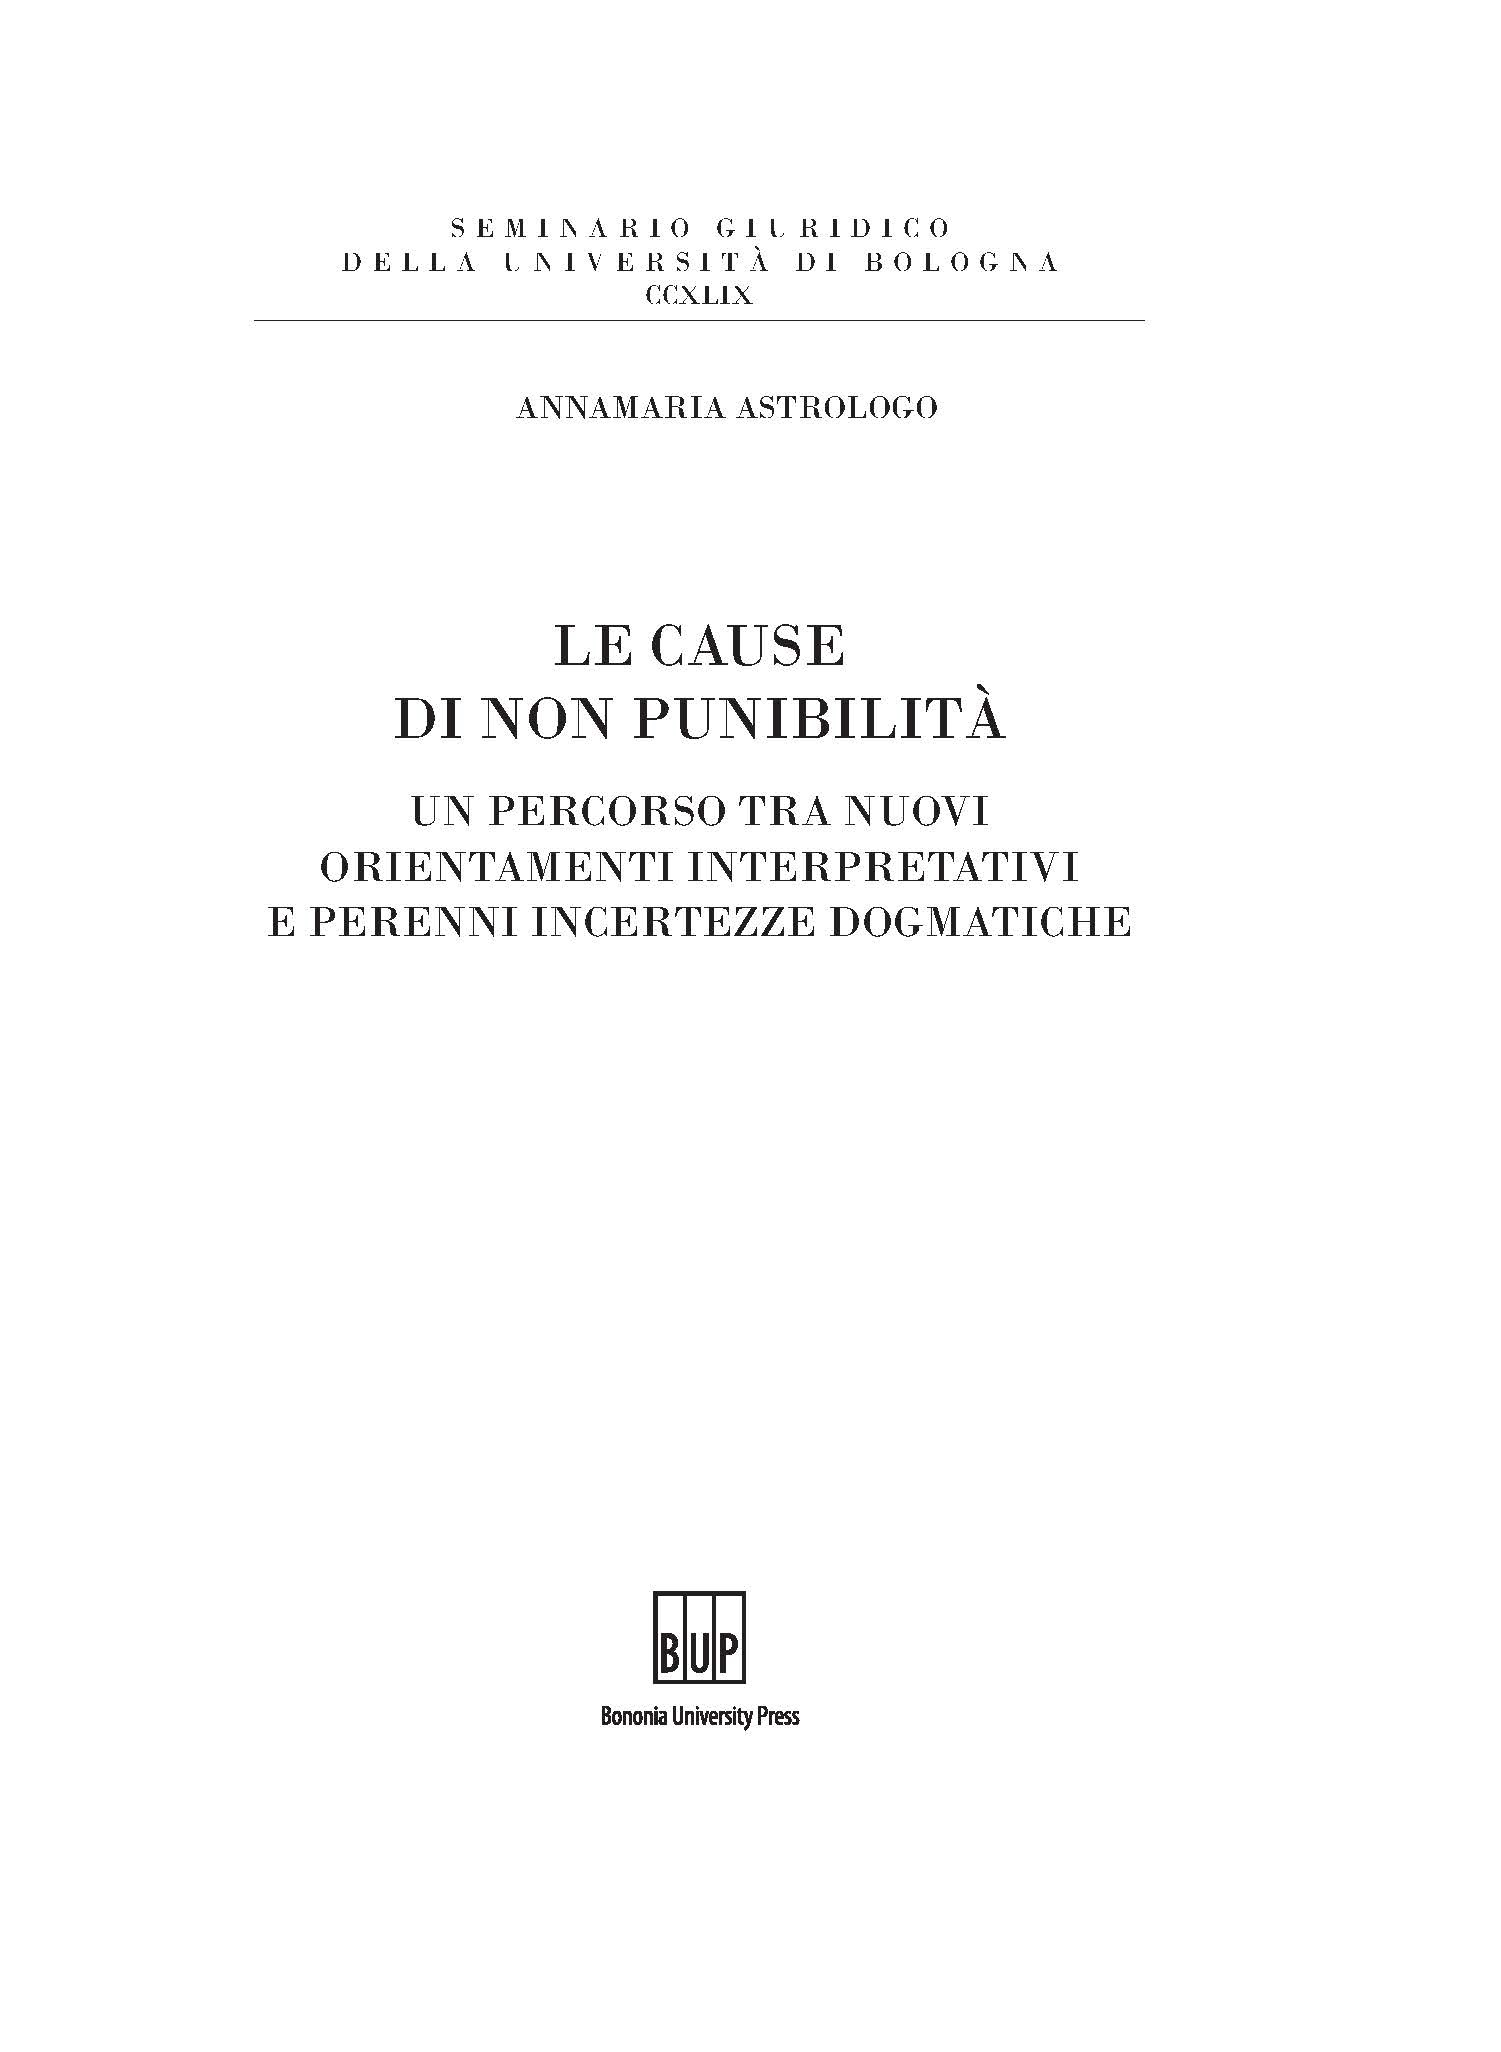 Le cause di non punibilità - Bologna University Press